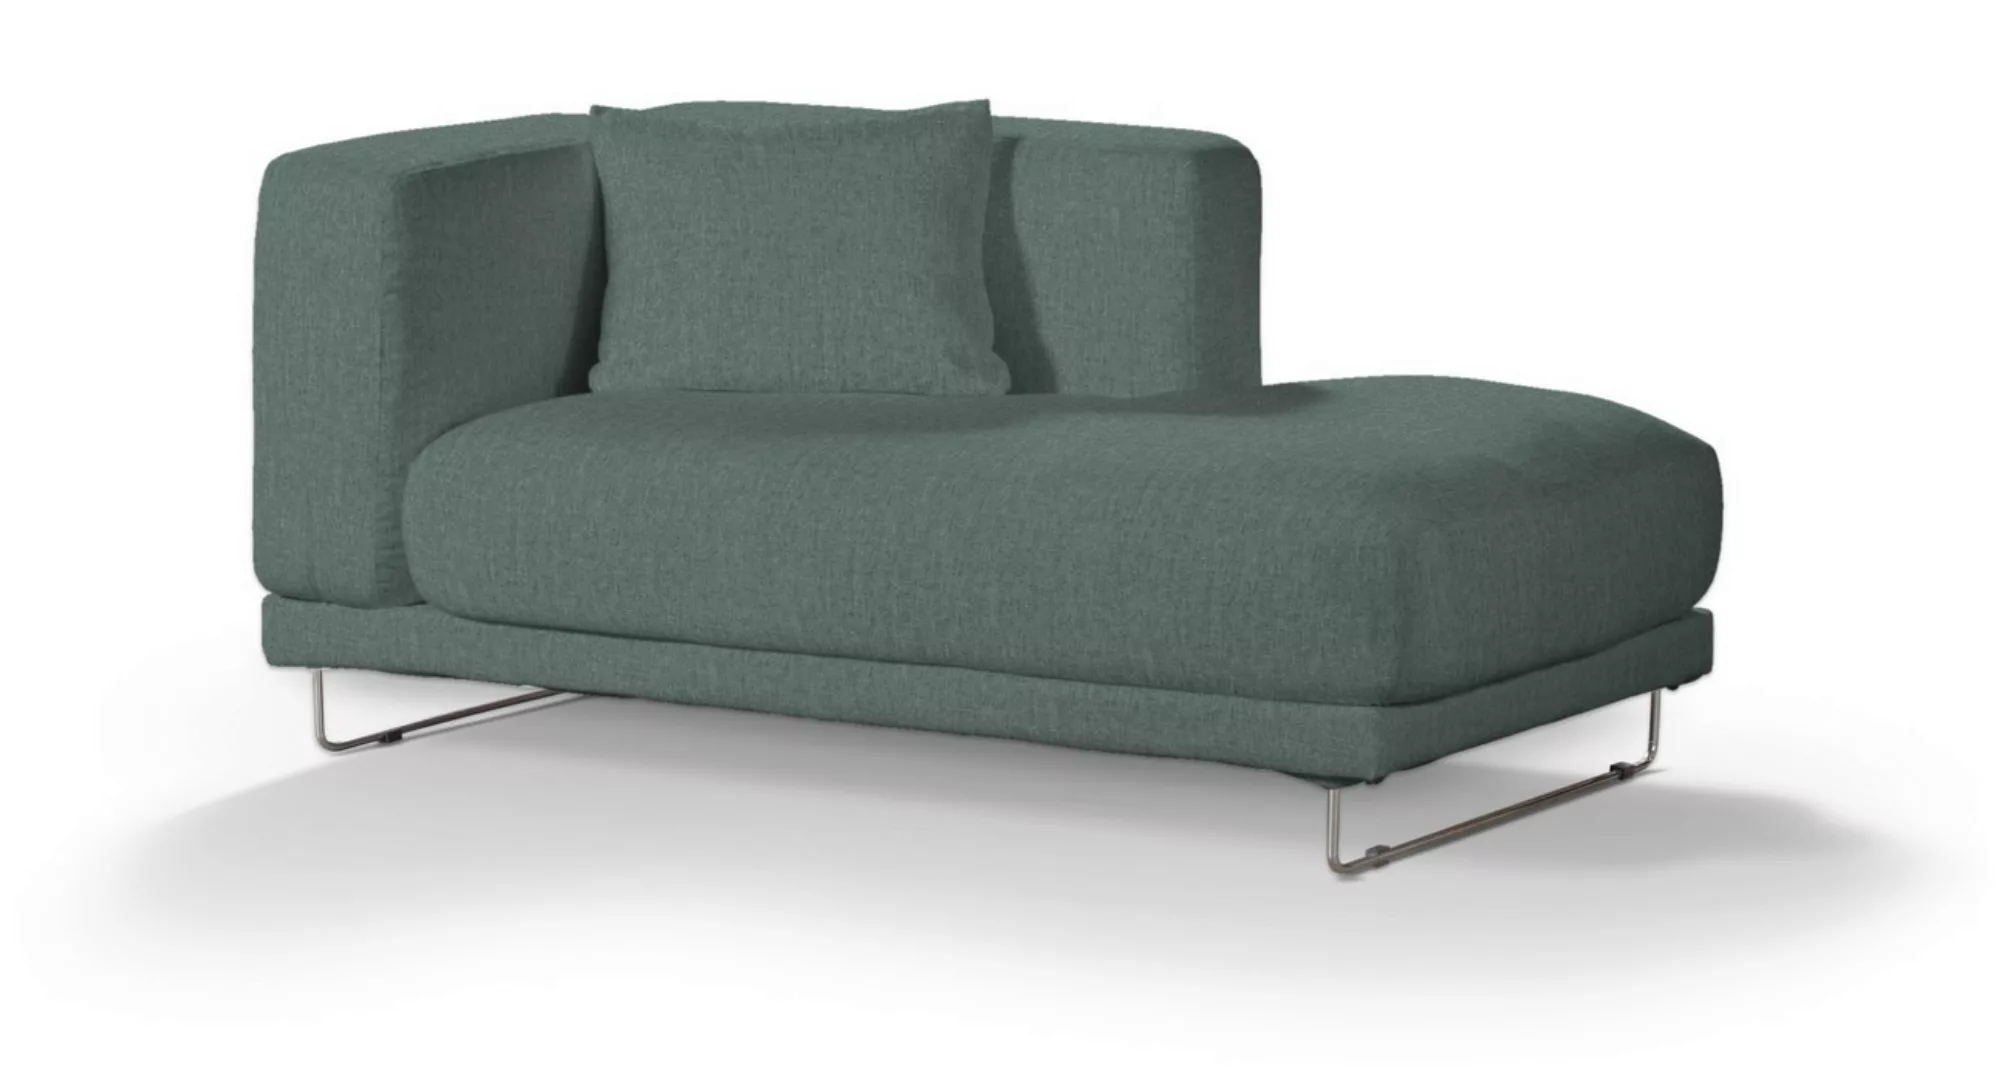 Tylösand Recamiere rechts Sofabezug, grau- blau, Bezug für Recamiere Tylösa günstig online kaufen